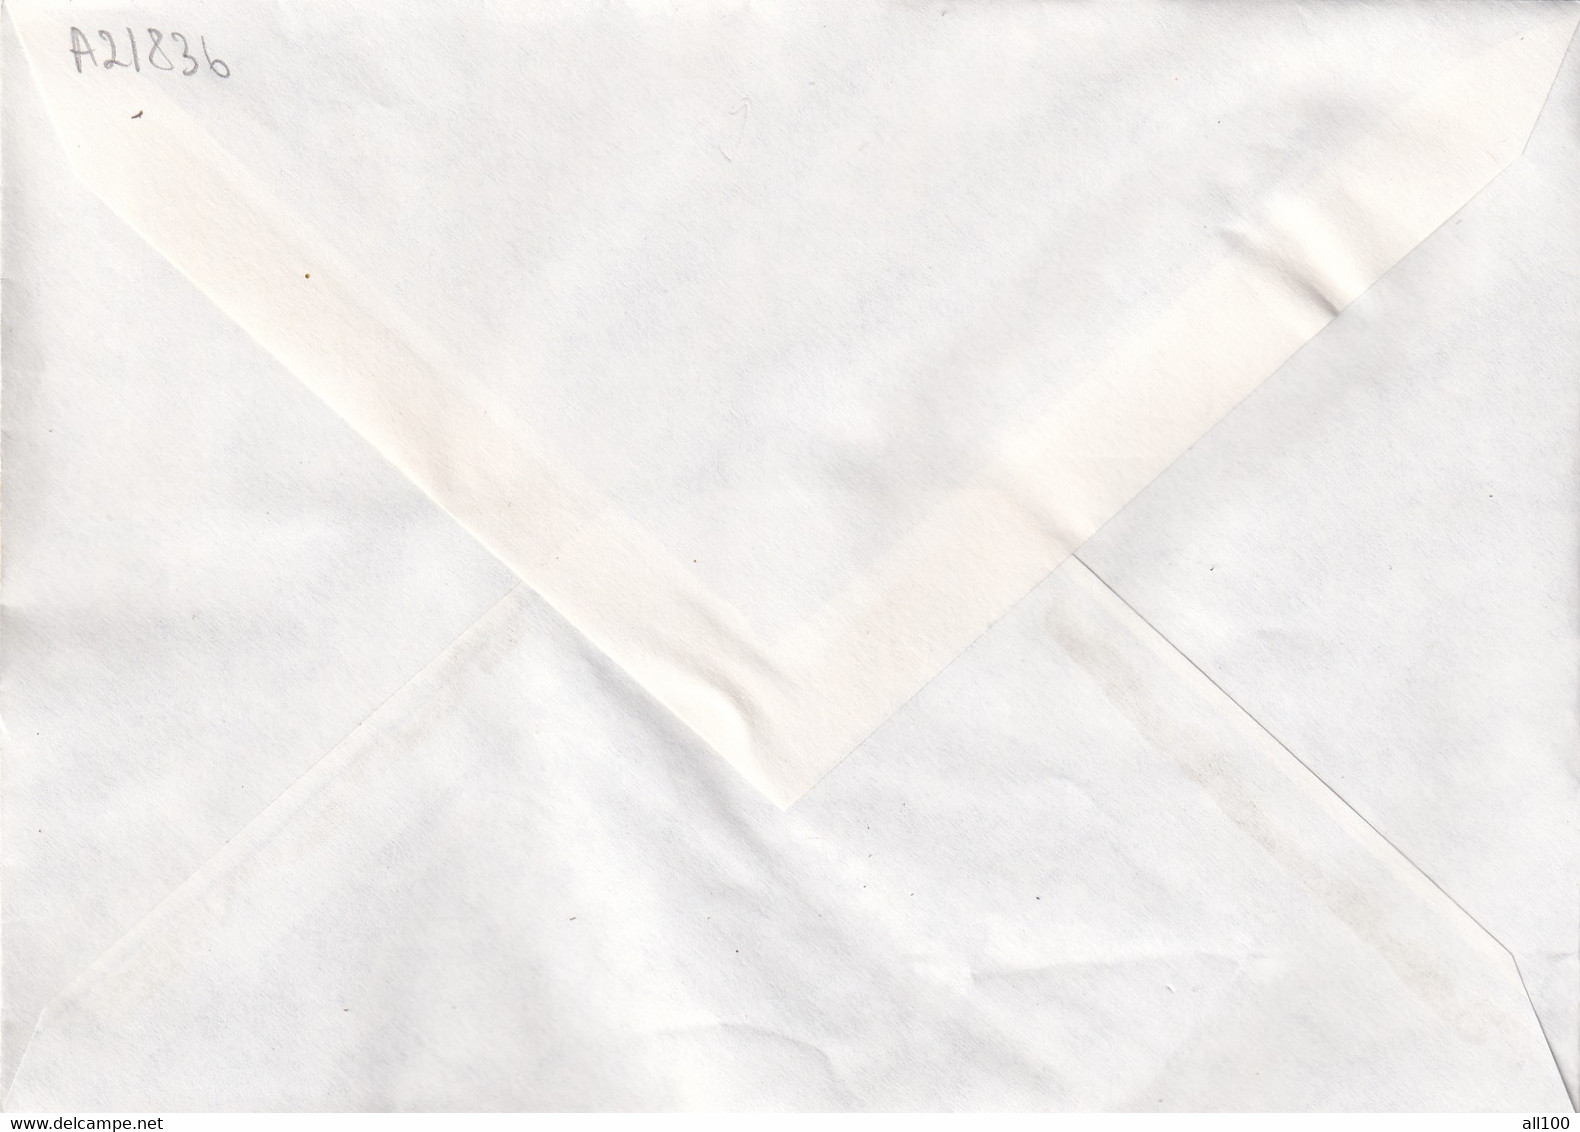 A21836 - Temple De Borobudur Premier Jour Paris Cover Envelope Unused 1979 France Stamp Buddhism - Boeddhisme